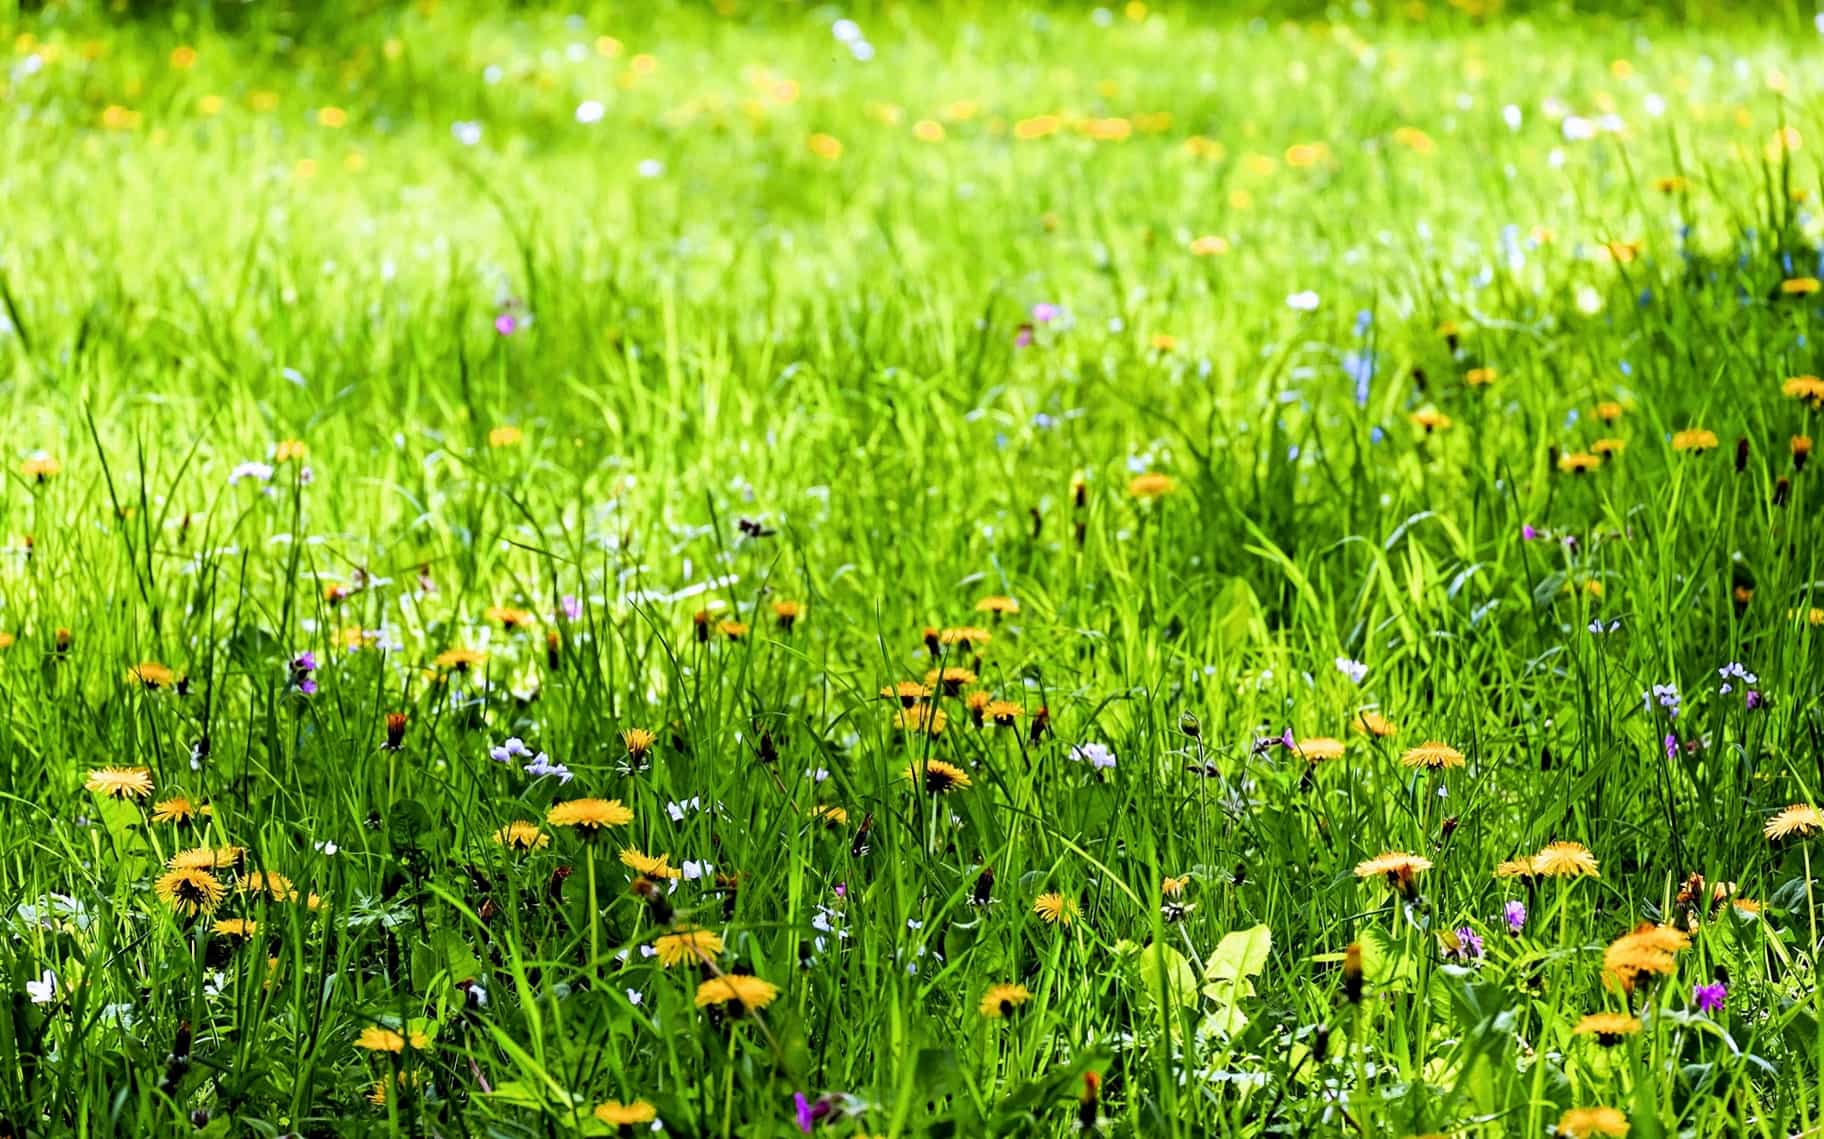 Kostenlose Bild: Blume, Pflanzen, Rasen, Wiese, Natur, Sommer, Feld ...